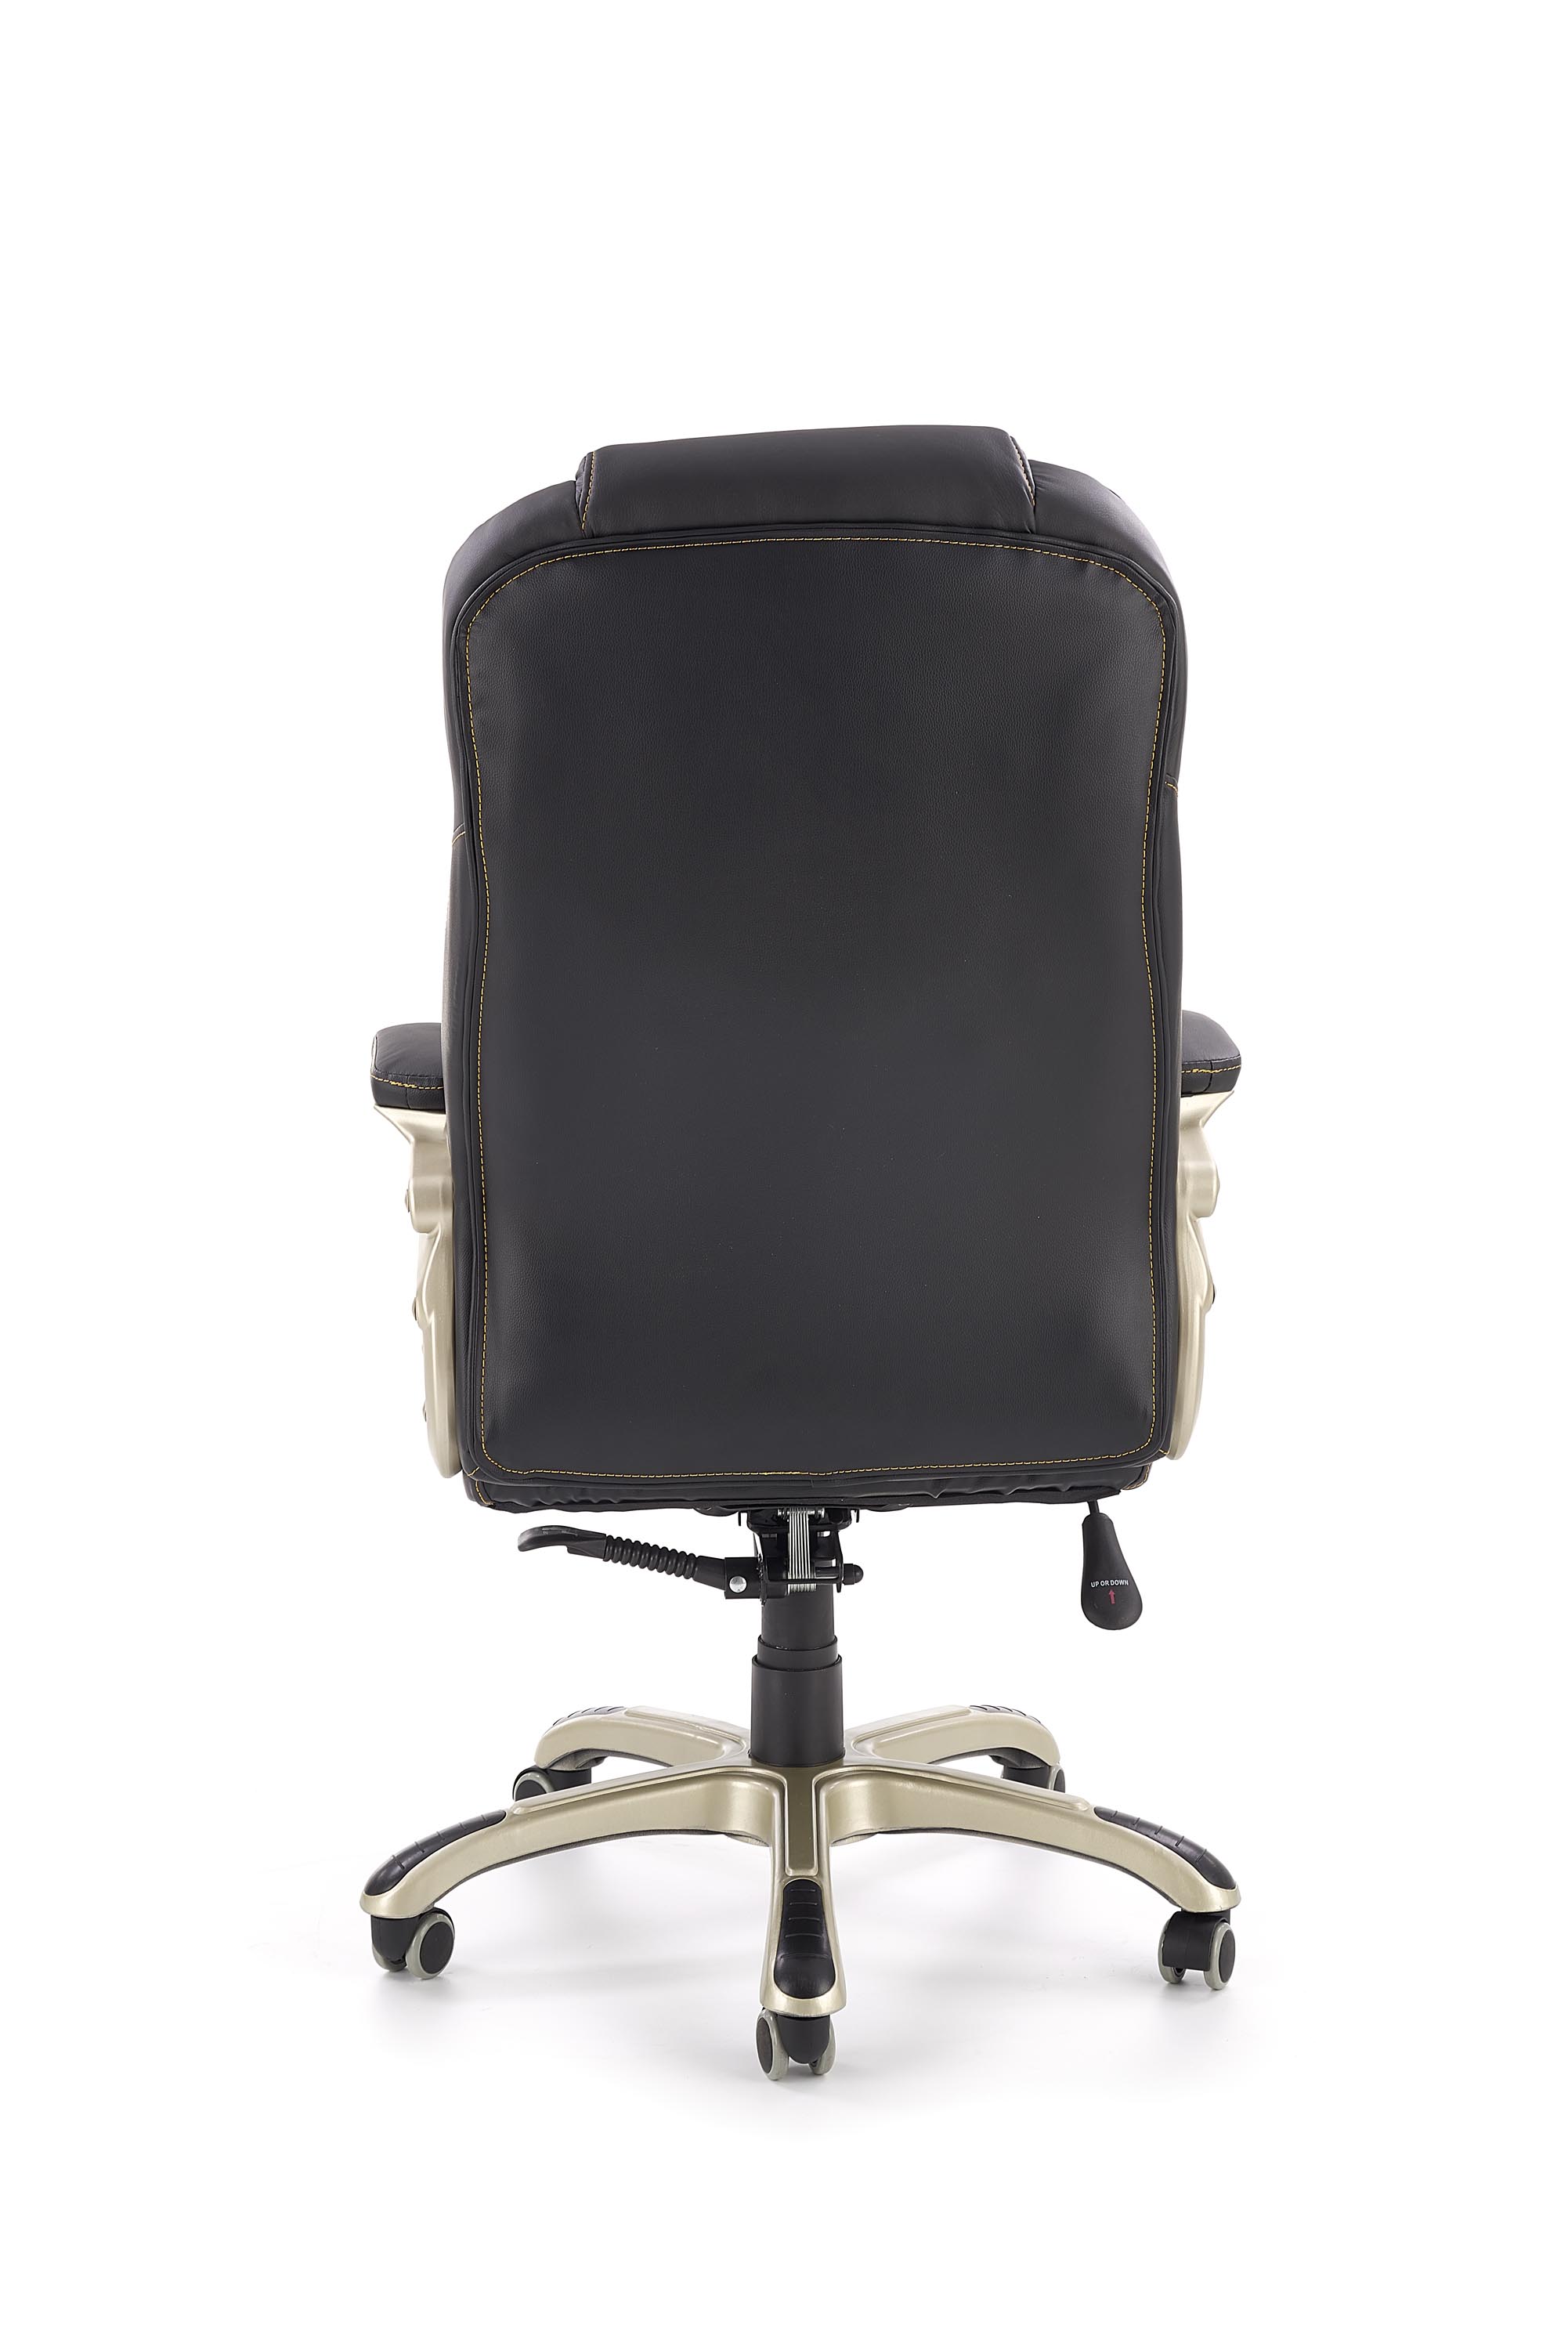 Desmond irodai szék - fekete Kancelářske křeslo desmond - Fekete